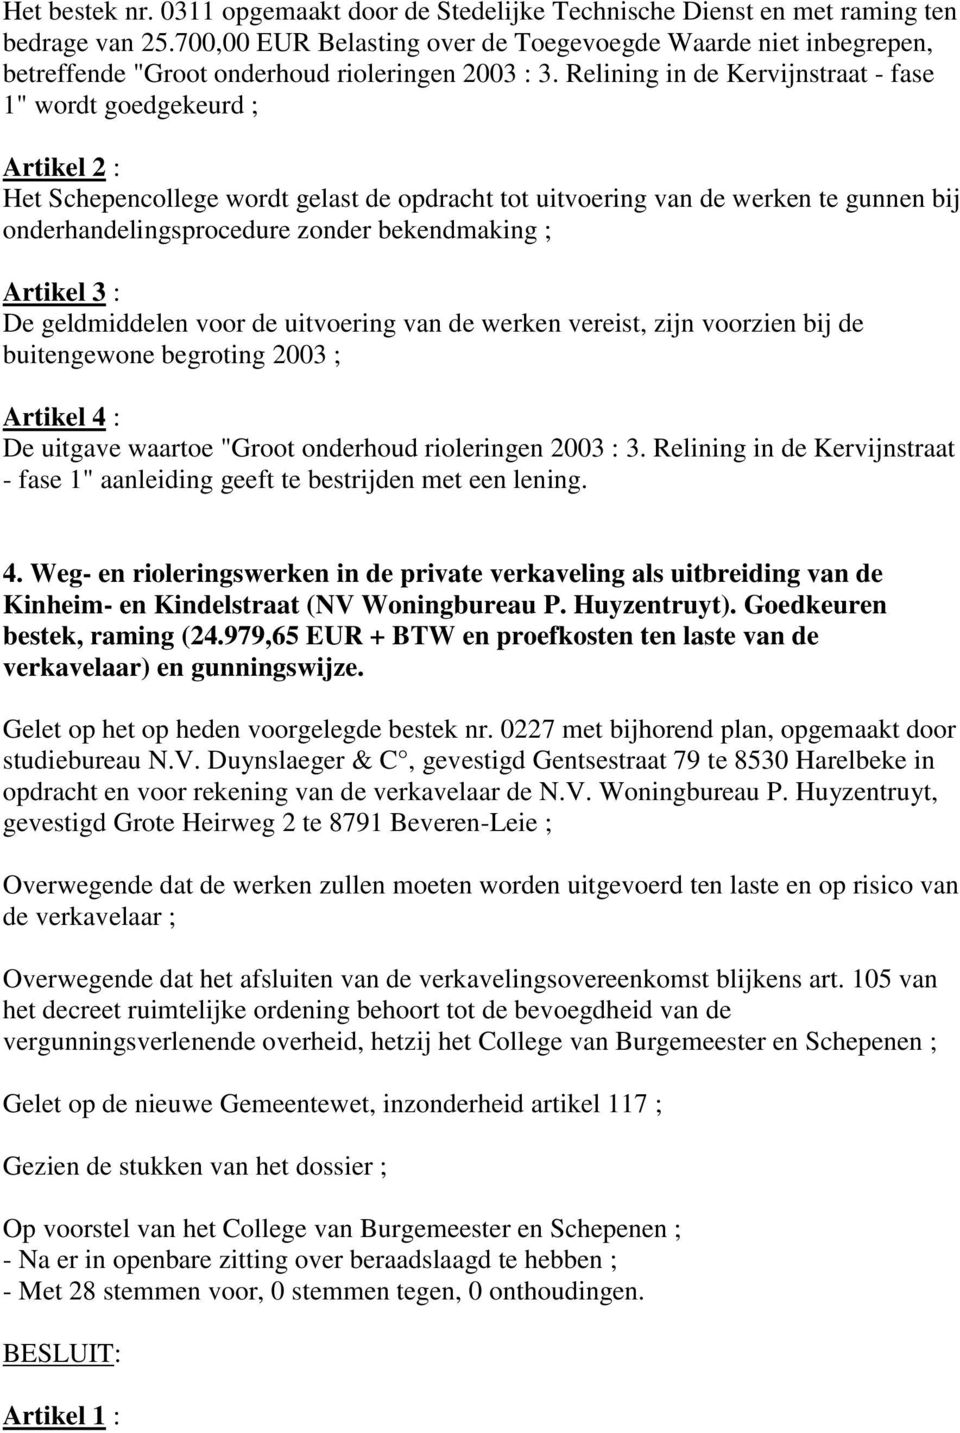 Relining in de Kervijnstraat - fase 1" wordt goedgekeurd ; Artikel 2 : Het Schepencollege wordt gelast de opdracht tot uitvoering van de werken te gunnen bij onderhandelingsprocedure zonder